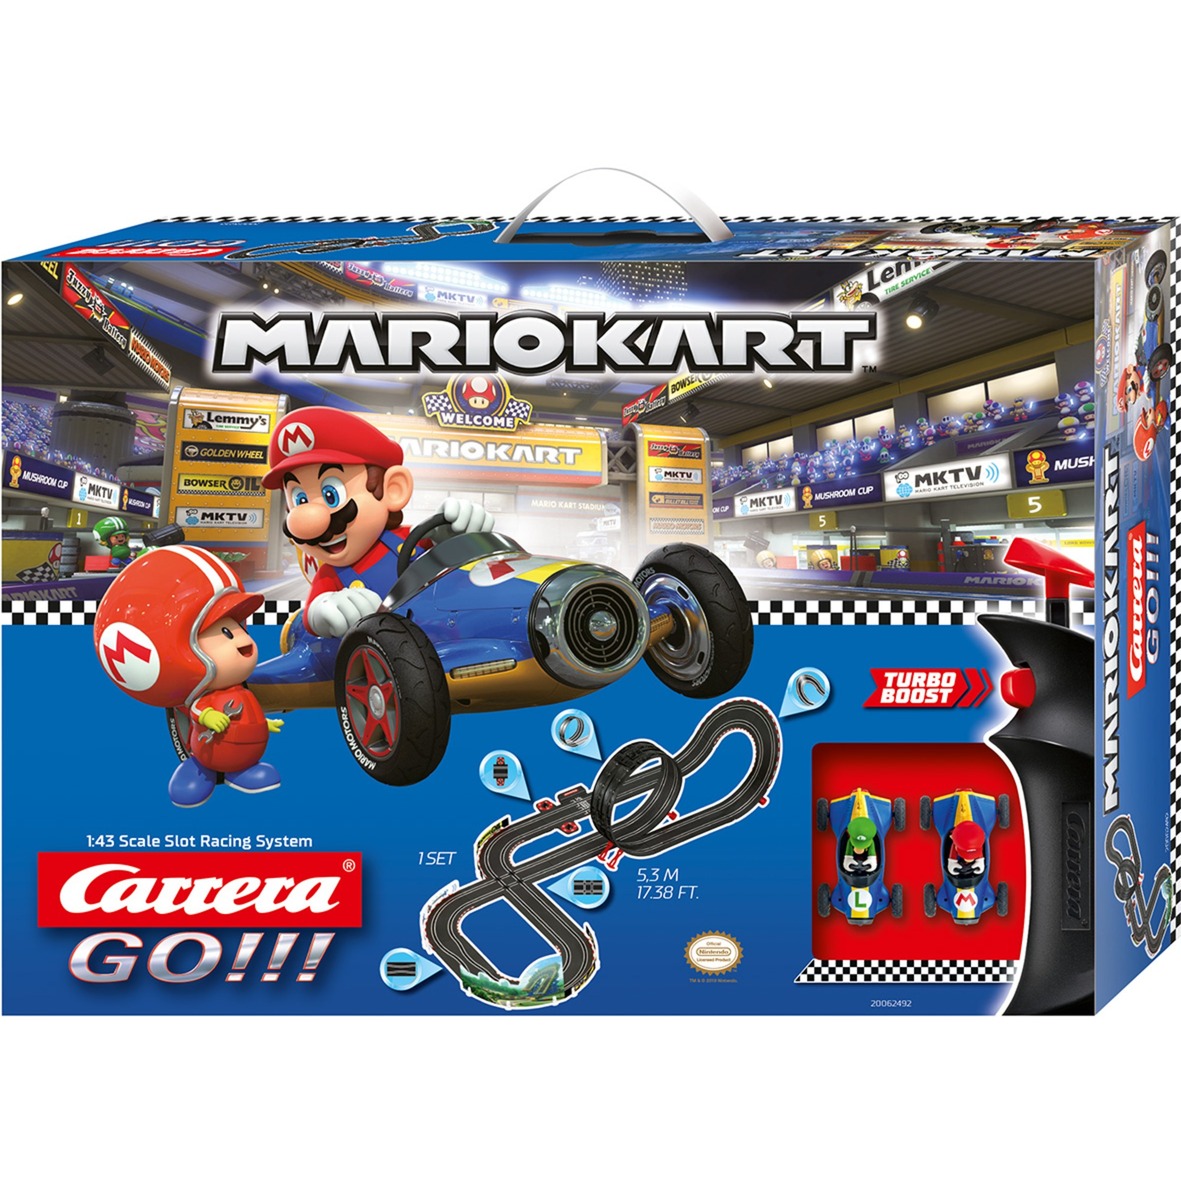 Image of Alternate - GO!!! Nintendo Mario Kart Mach 8, Rennbahn online einkaufen bei Alternate